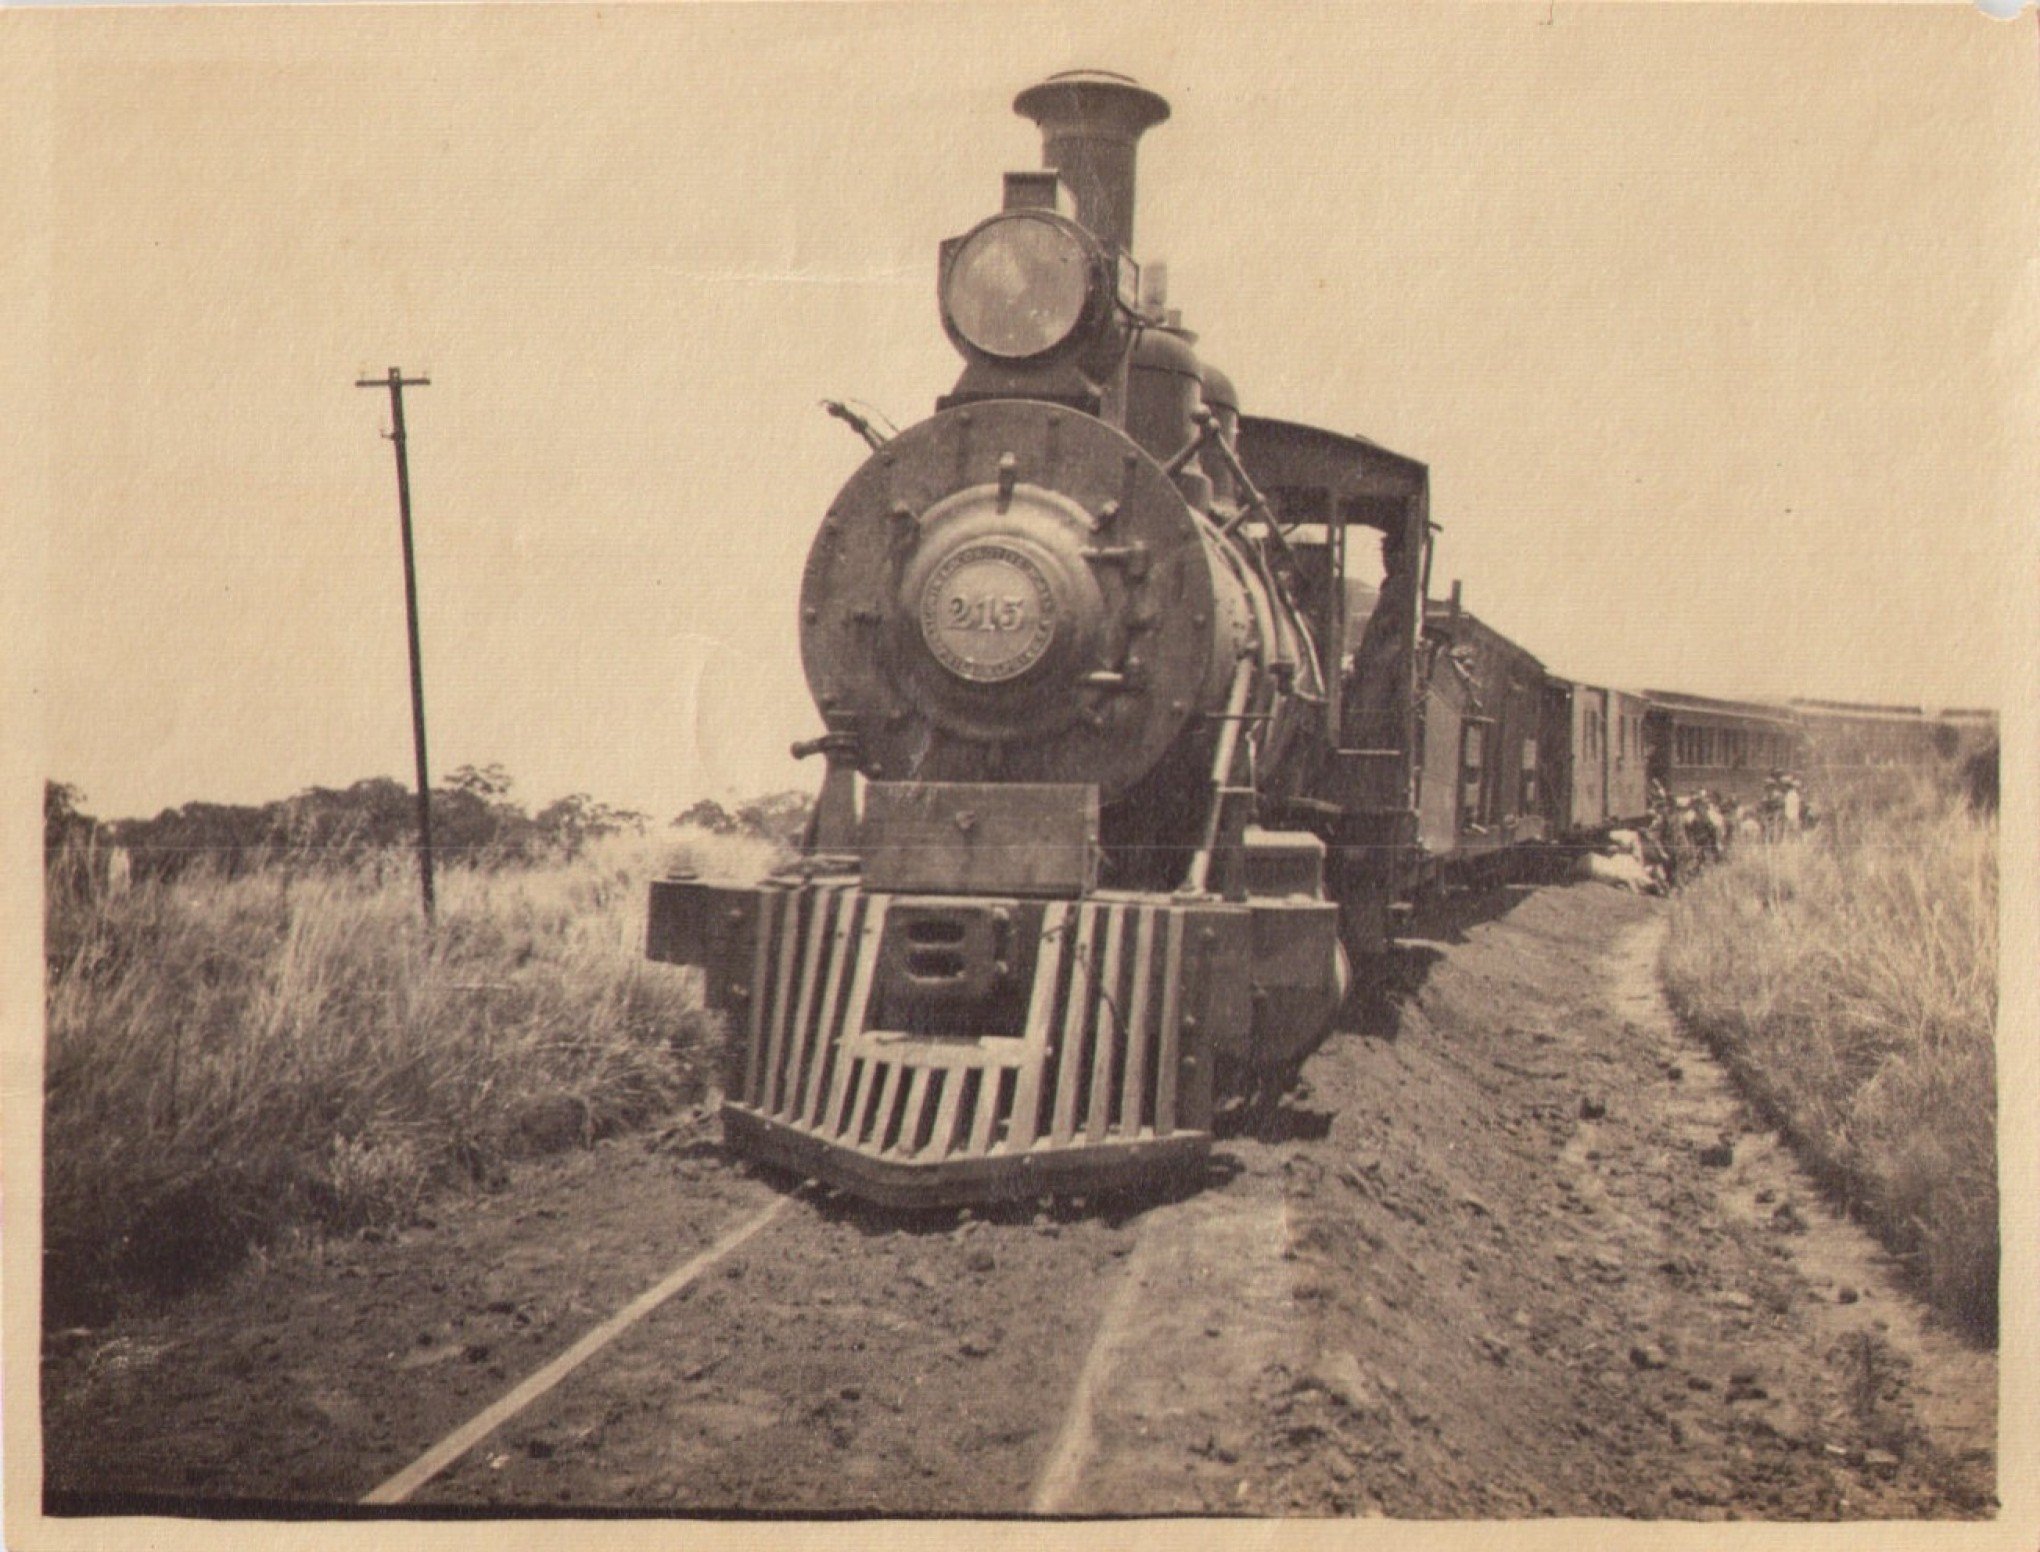 CURIOSIDADES DA IMIGRAÇÃO #111: Os trens começaram a circular pela região há 150 anos